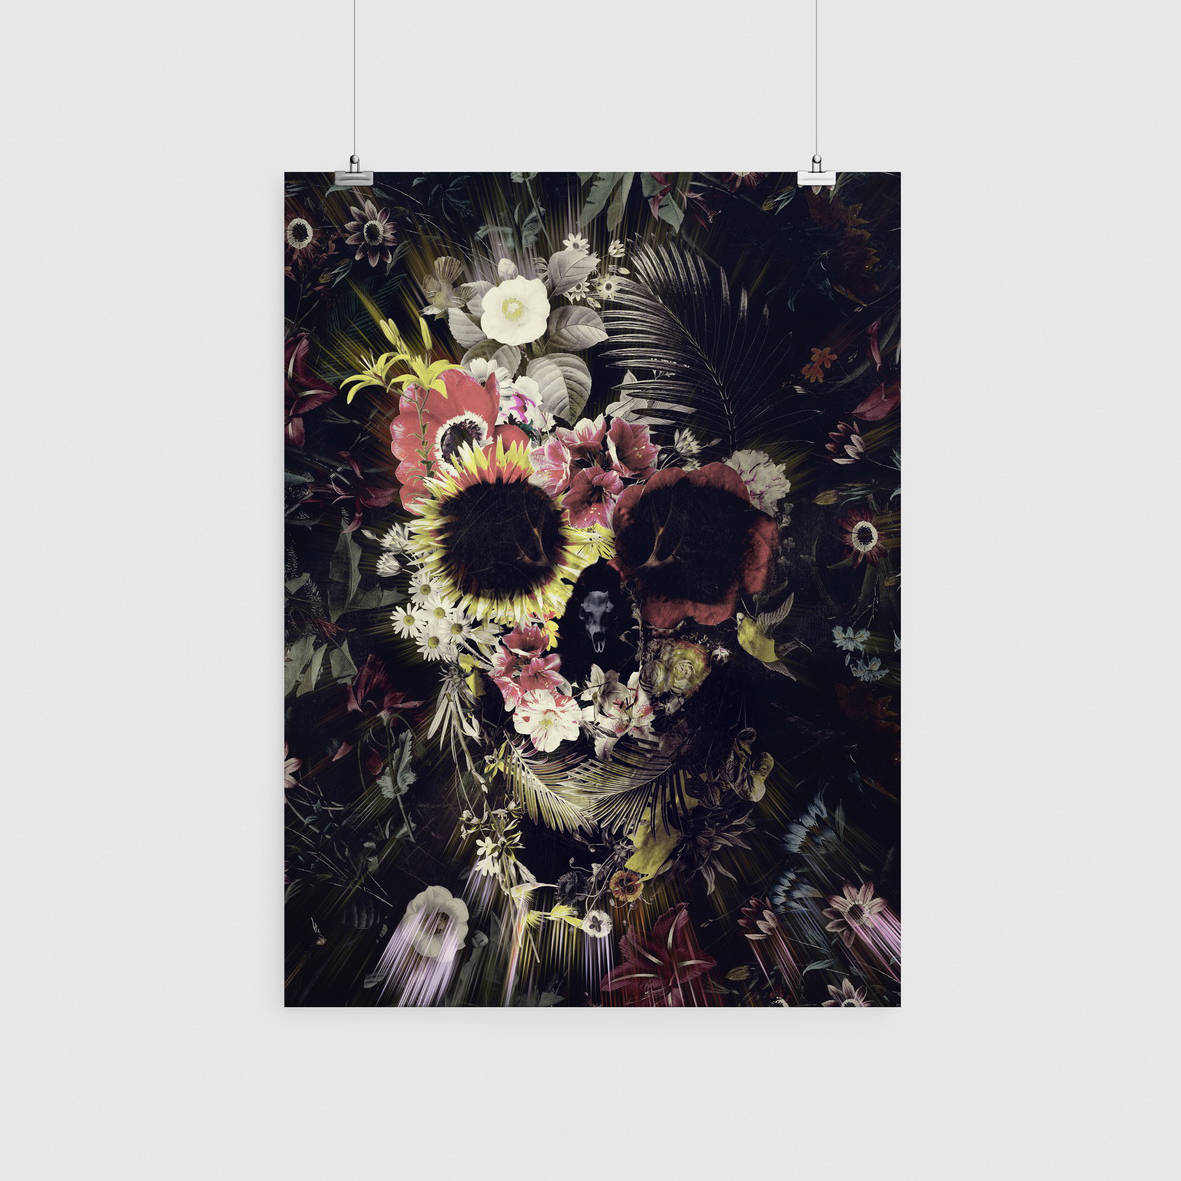 Flower Skull Prints, Set Of 3 Skull Home Decor, Nature Skull Poster Set, Sugar Skull Wall Art Gift, Dark Gothic Floral Skull Art Print Decor